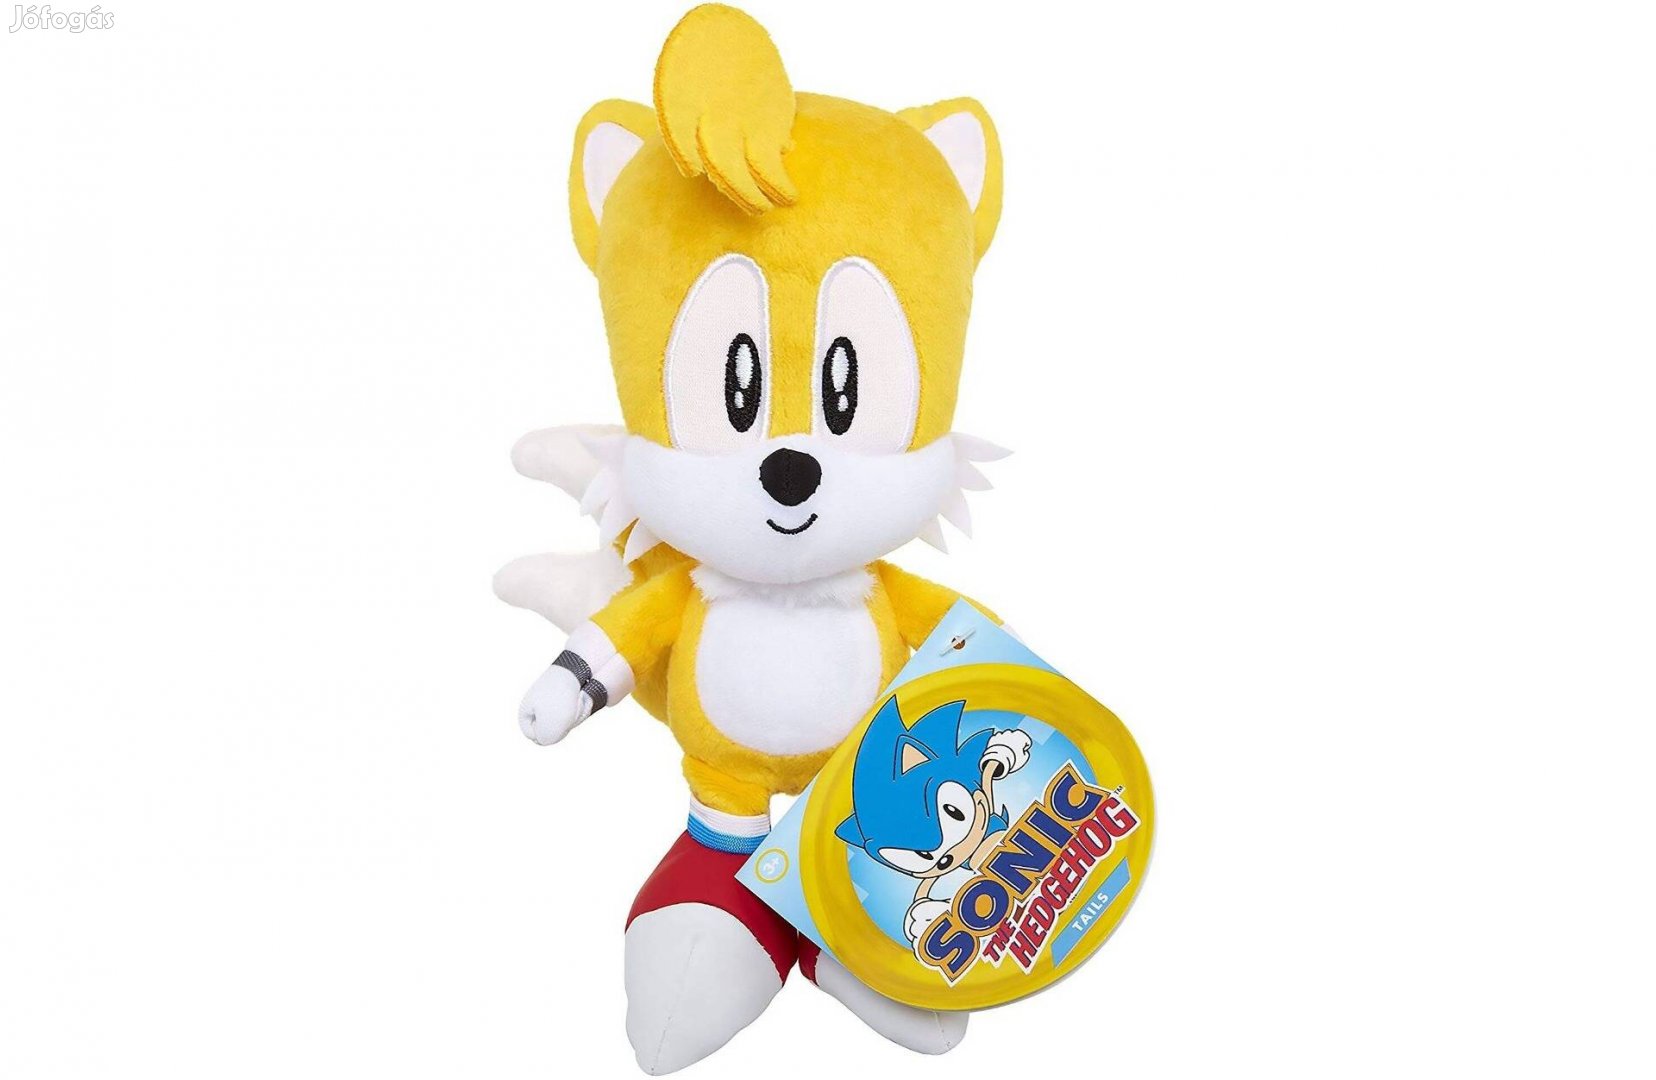 Sonic a sündisznó Tails róka plüss 20 cm Sega Jakks